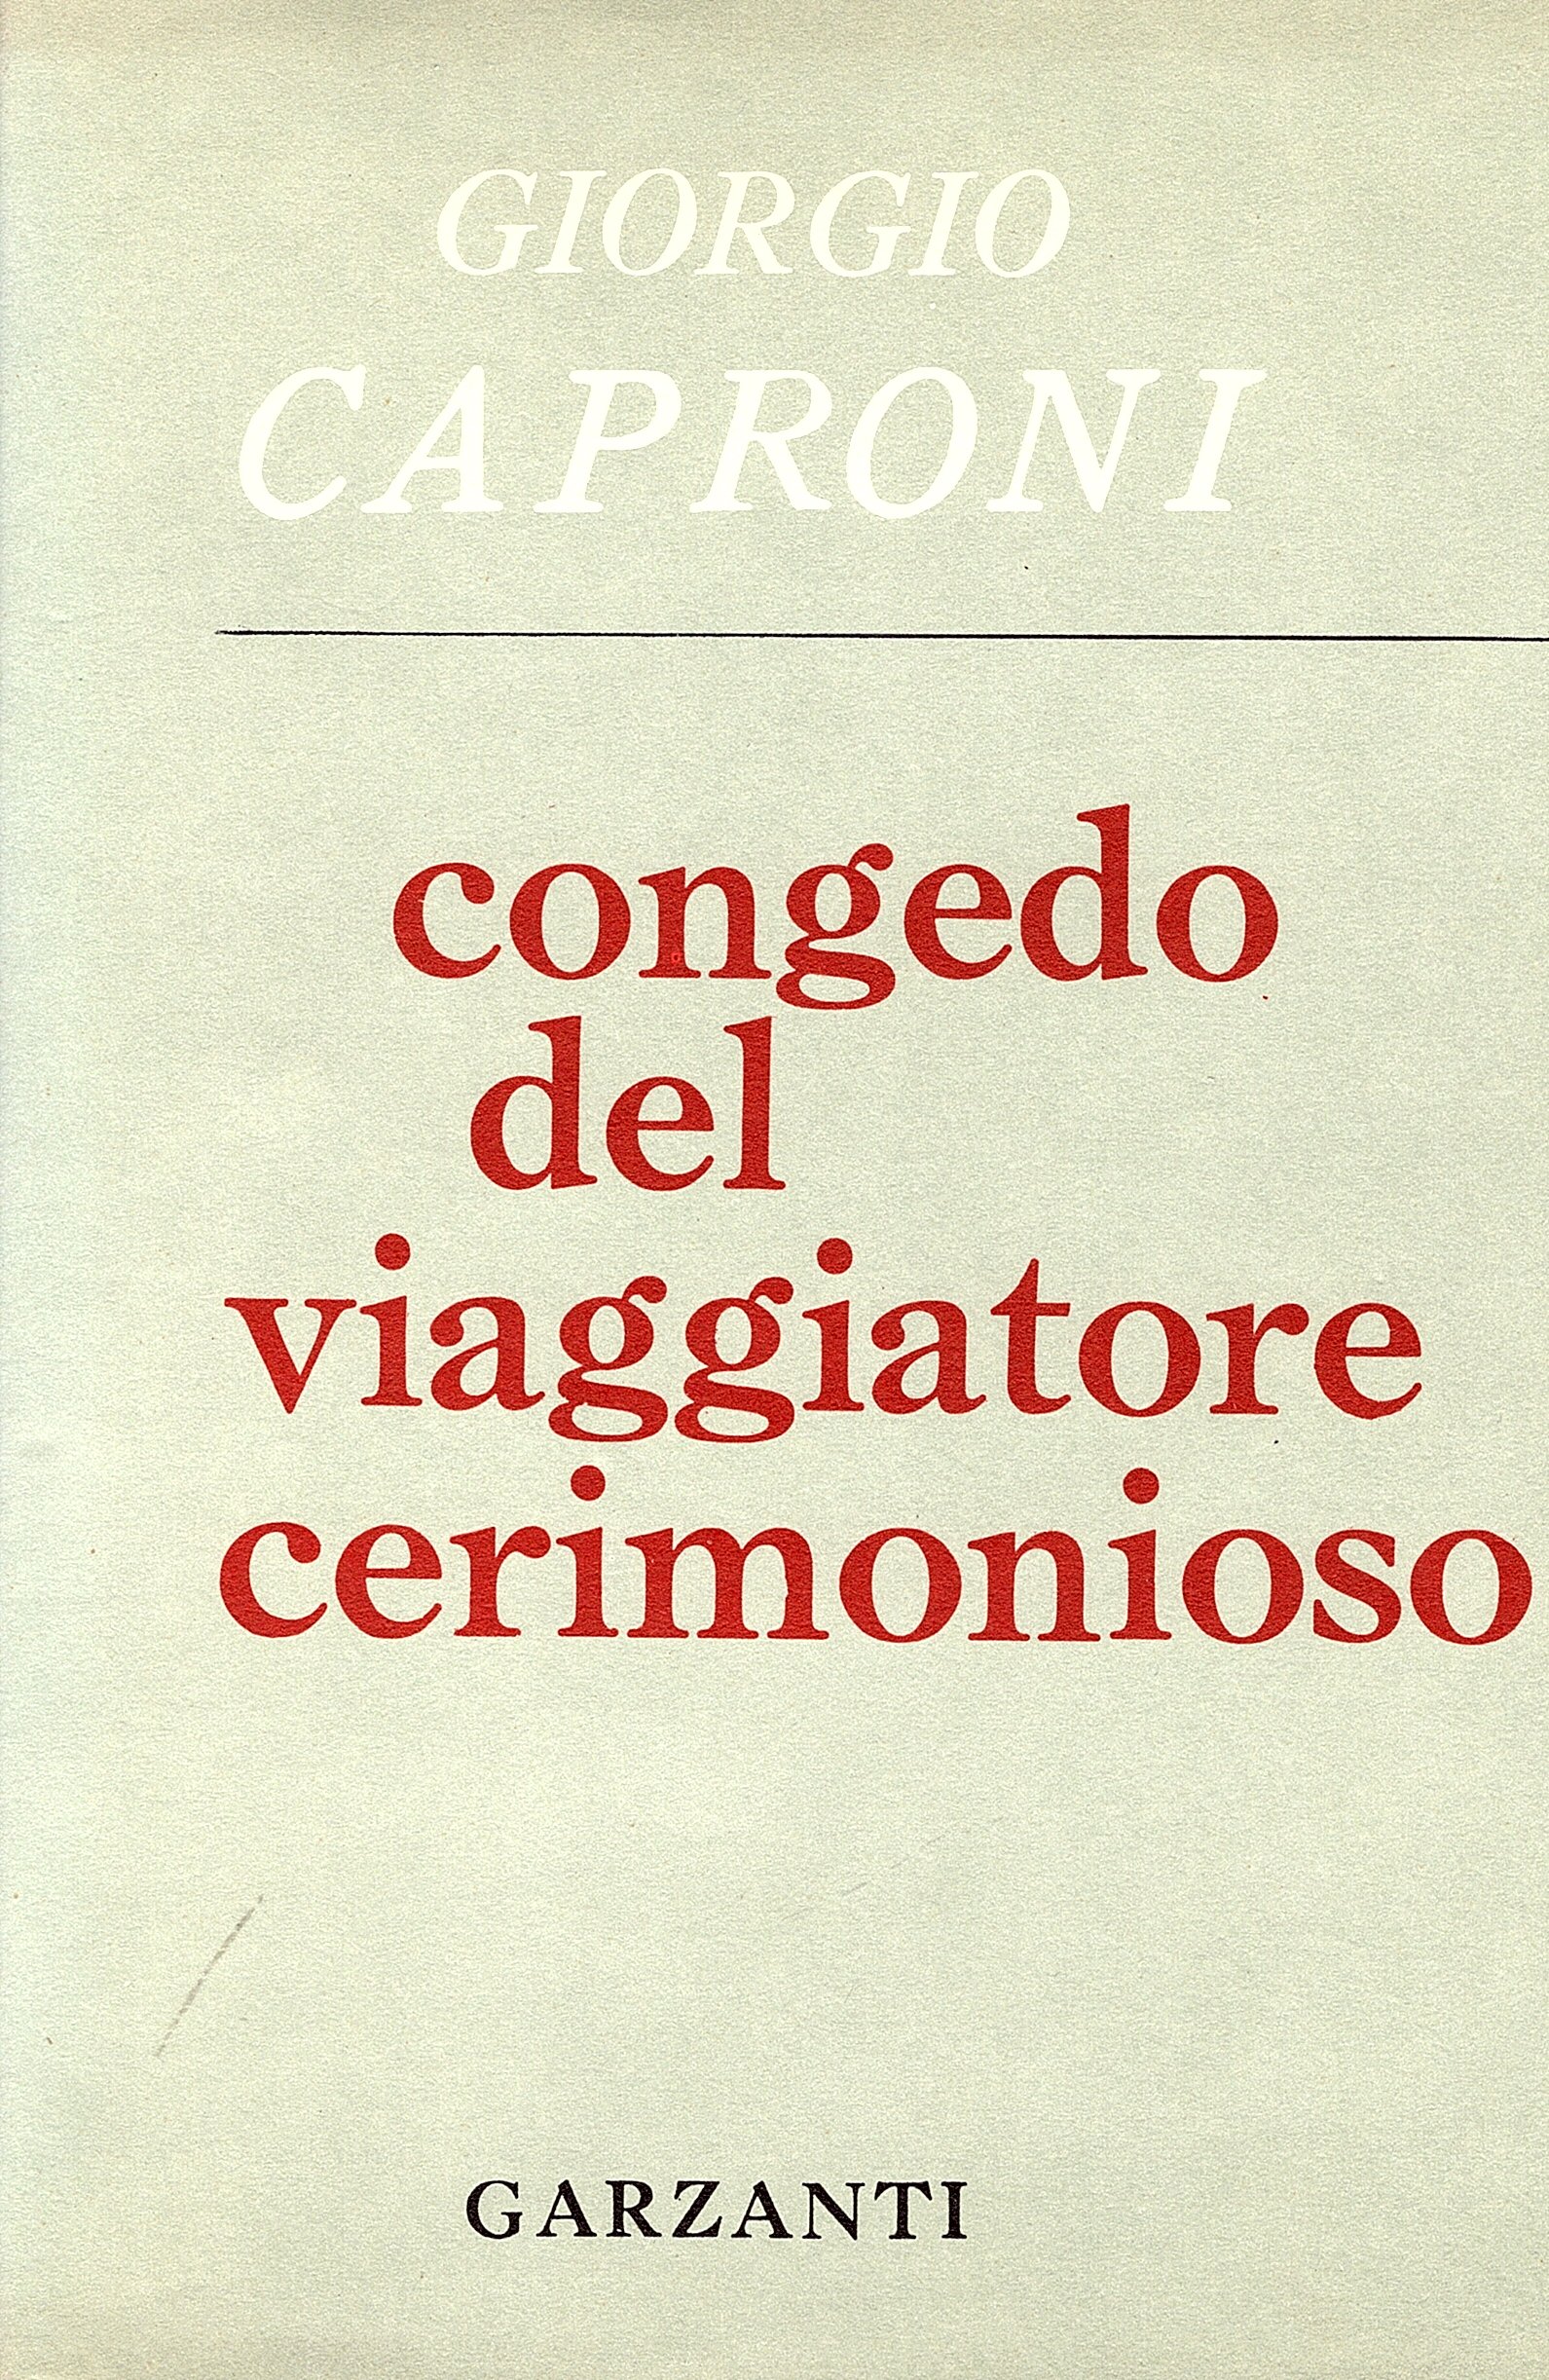 https://www.dblit.ufsc.br/_images/obras/Congedo del viaggiatore cerimonioso & altre prosopopee, Milano, Garzanti, 1965..jpg